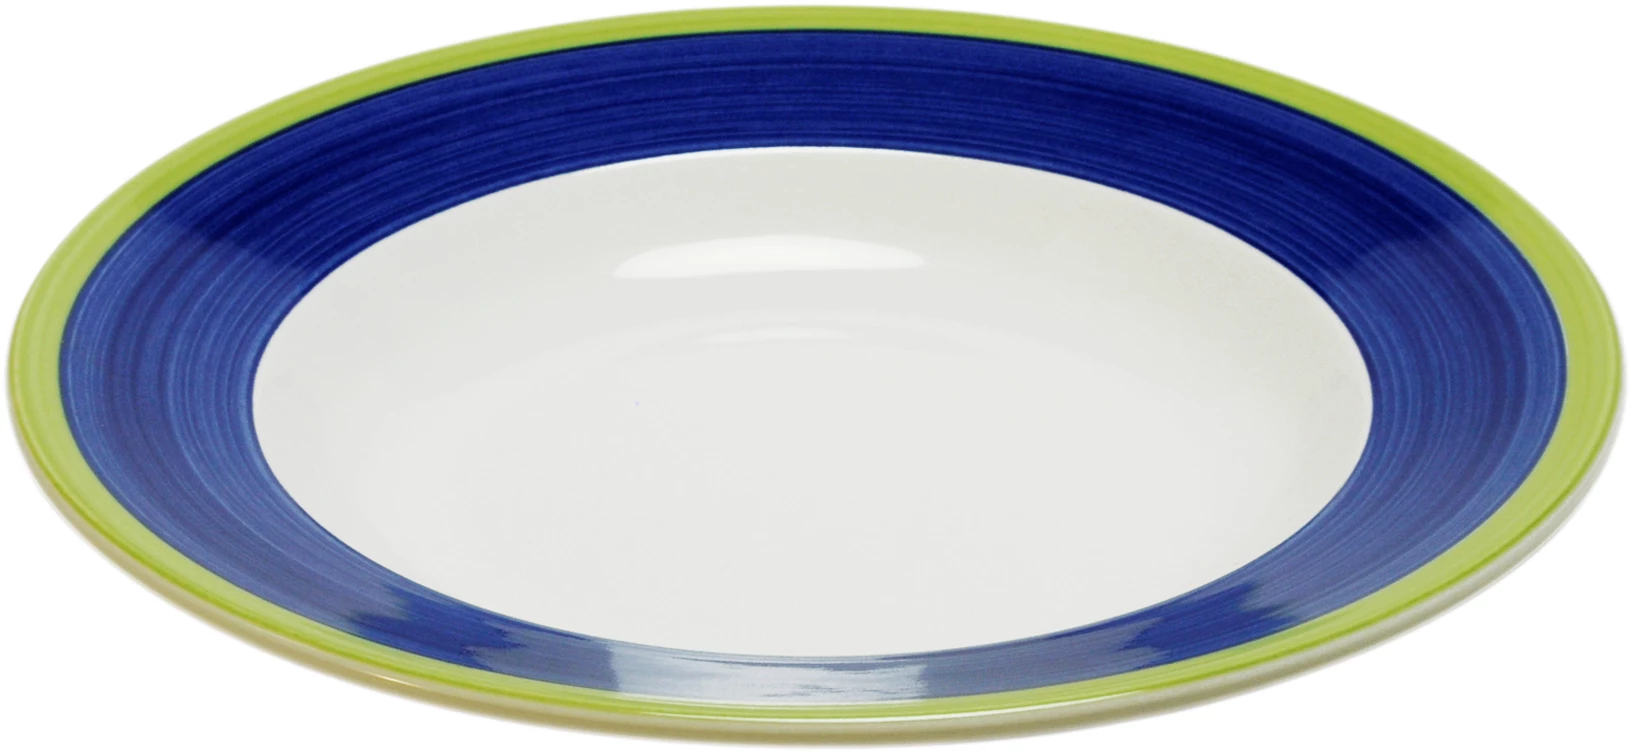 Figgjo Capri tallerken, dyb, blå, ø24 cm